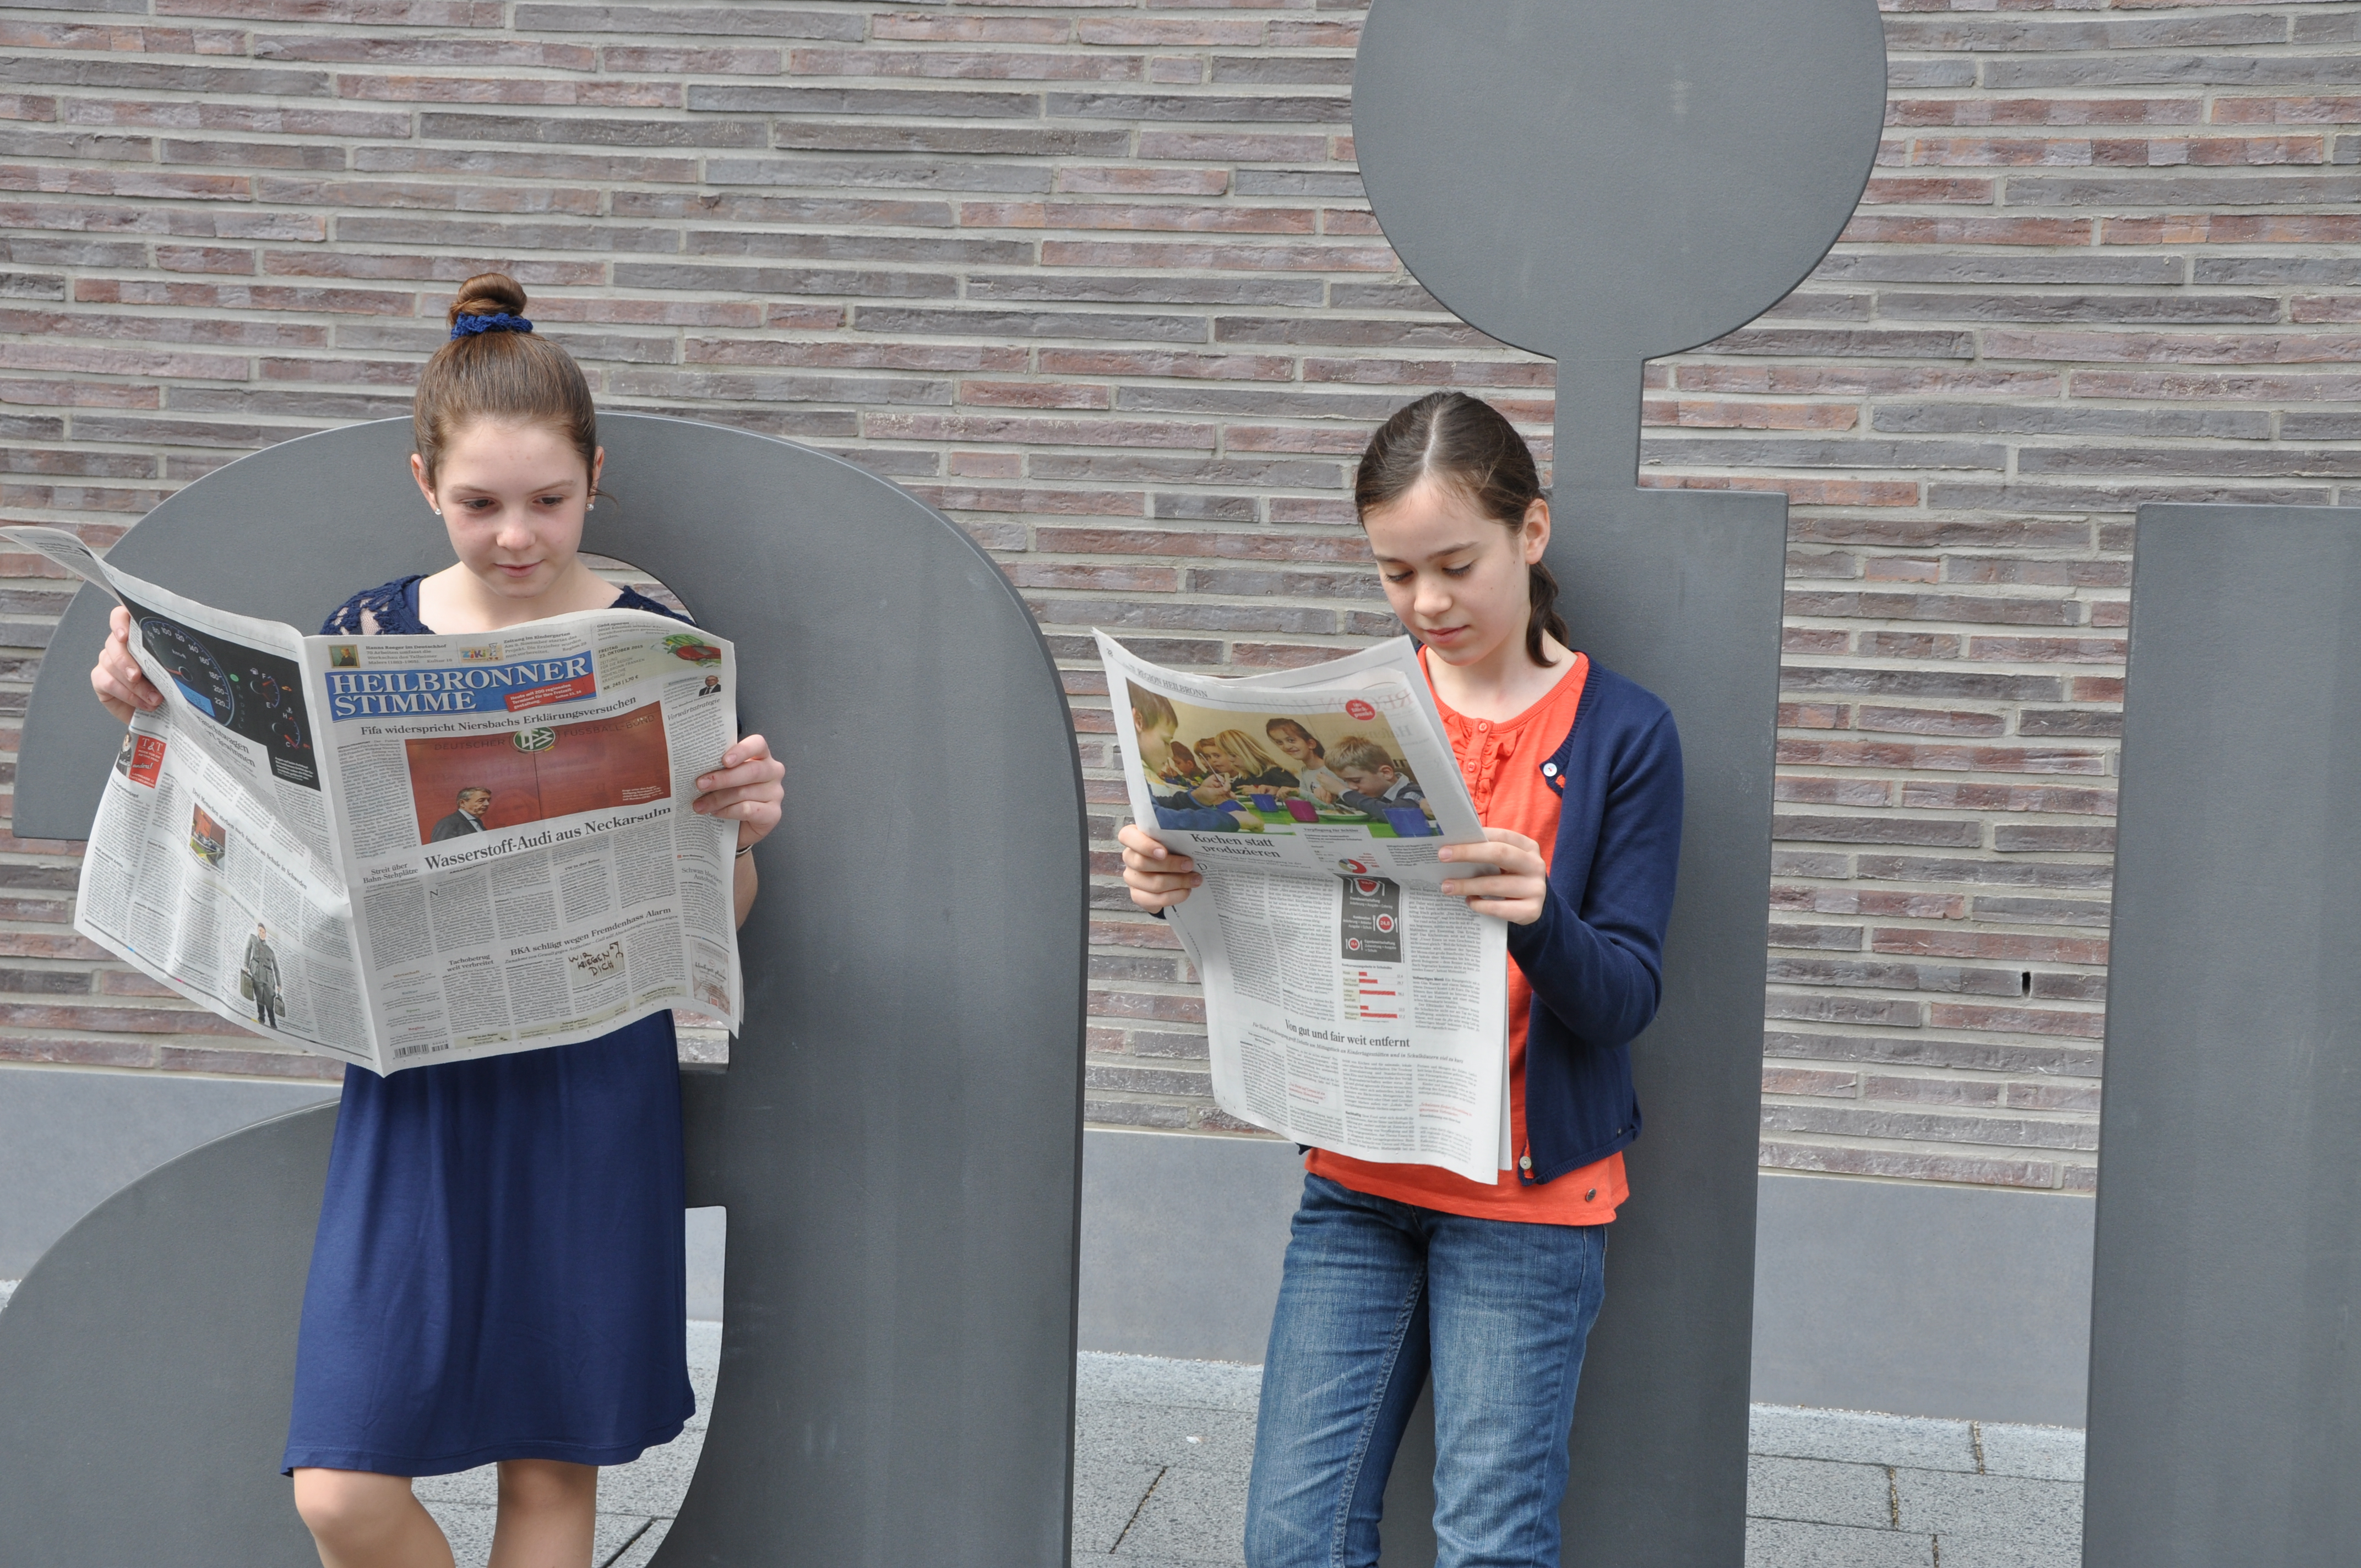 Zwei junge Schülerinnen stehen vor dem aim Buchstaben vor dem aim-Gebäude und lesen die Heilbronner Stimme.